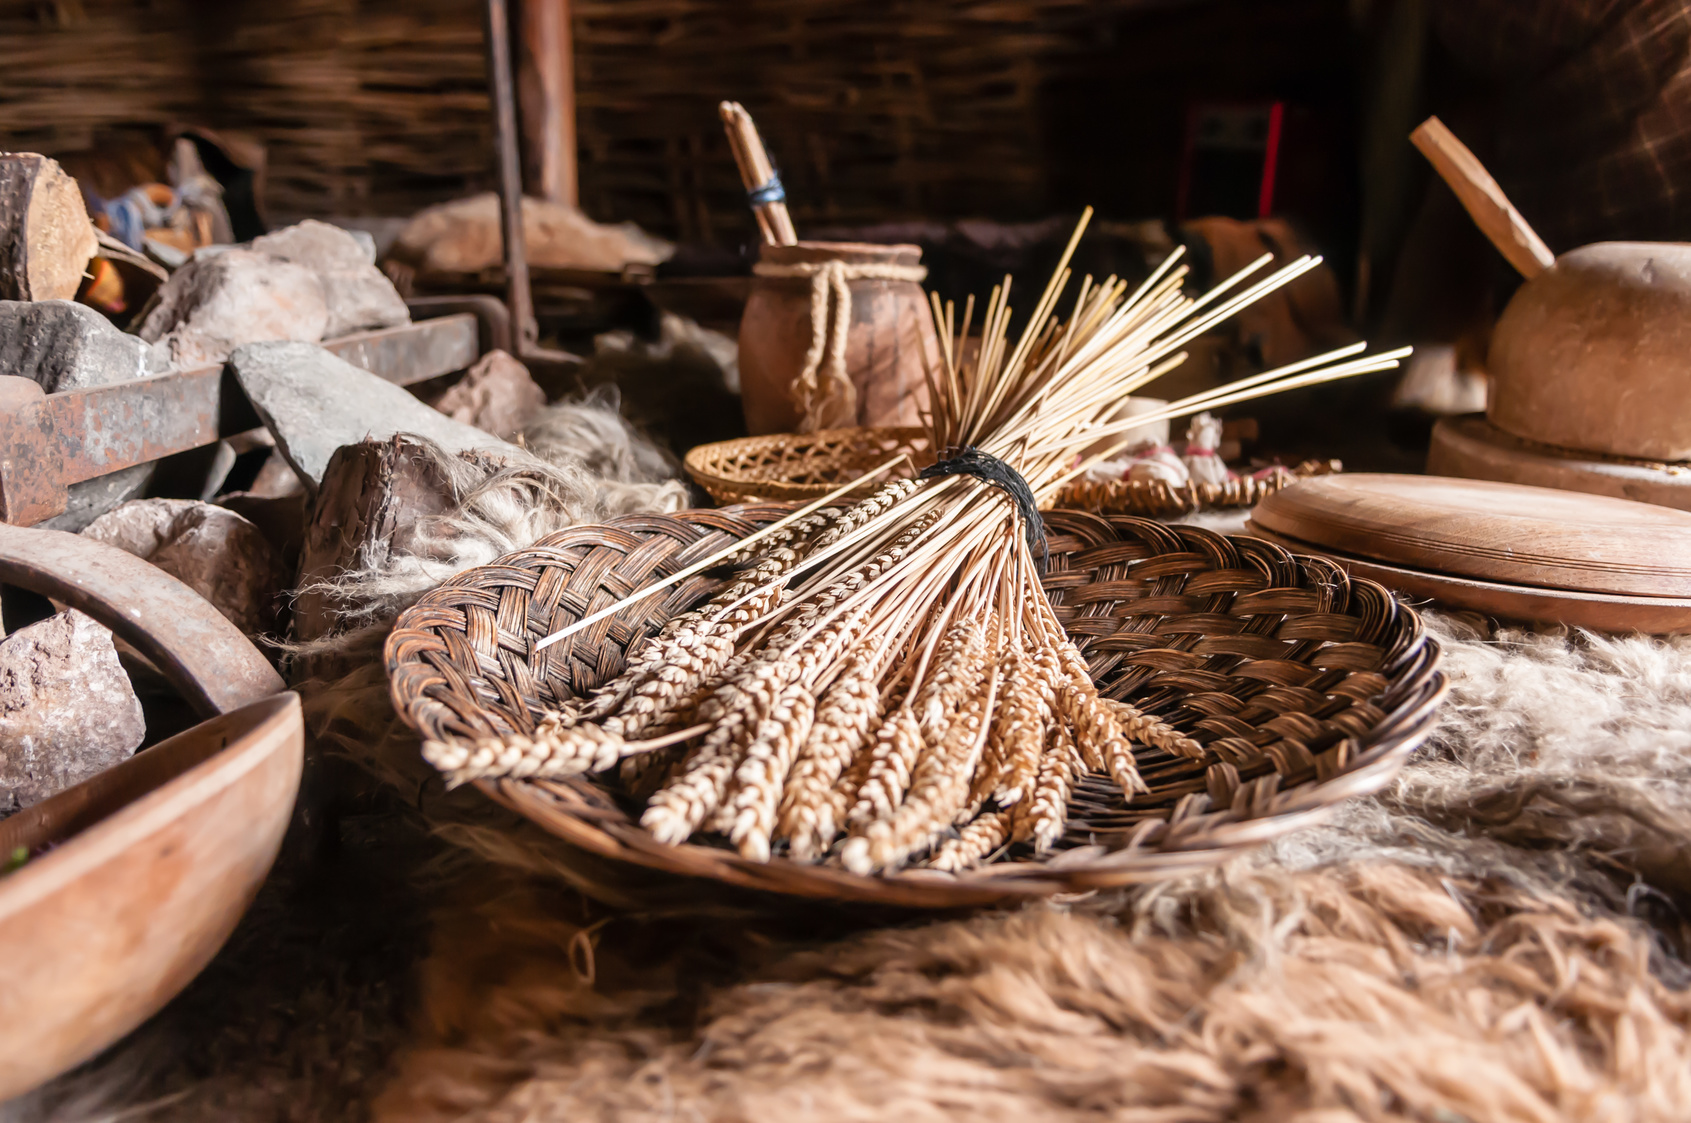 Au Néolithique, les humains ont appris des techniques pour transformer la nourriture, par exemple en la broyant, en la cuisant… © Stephen, fotolia